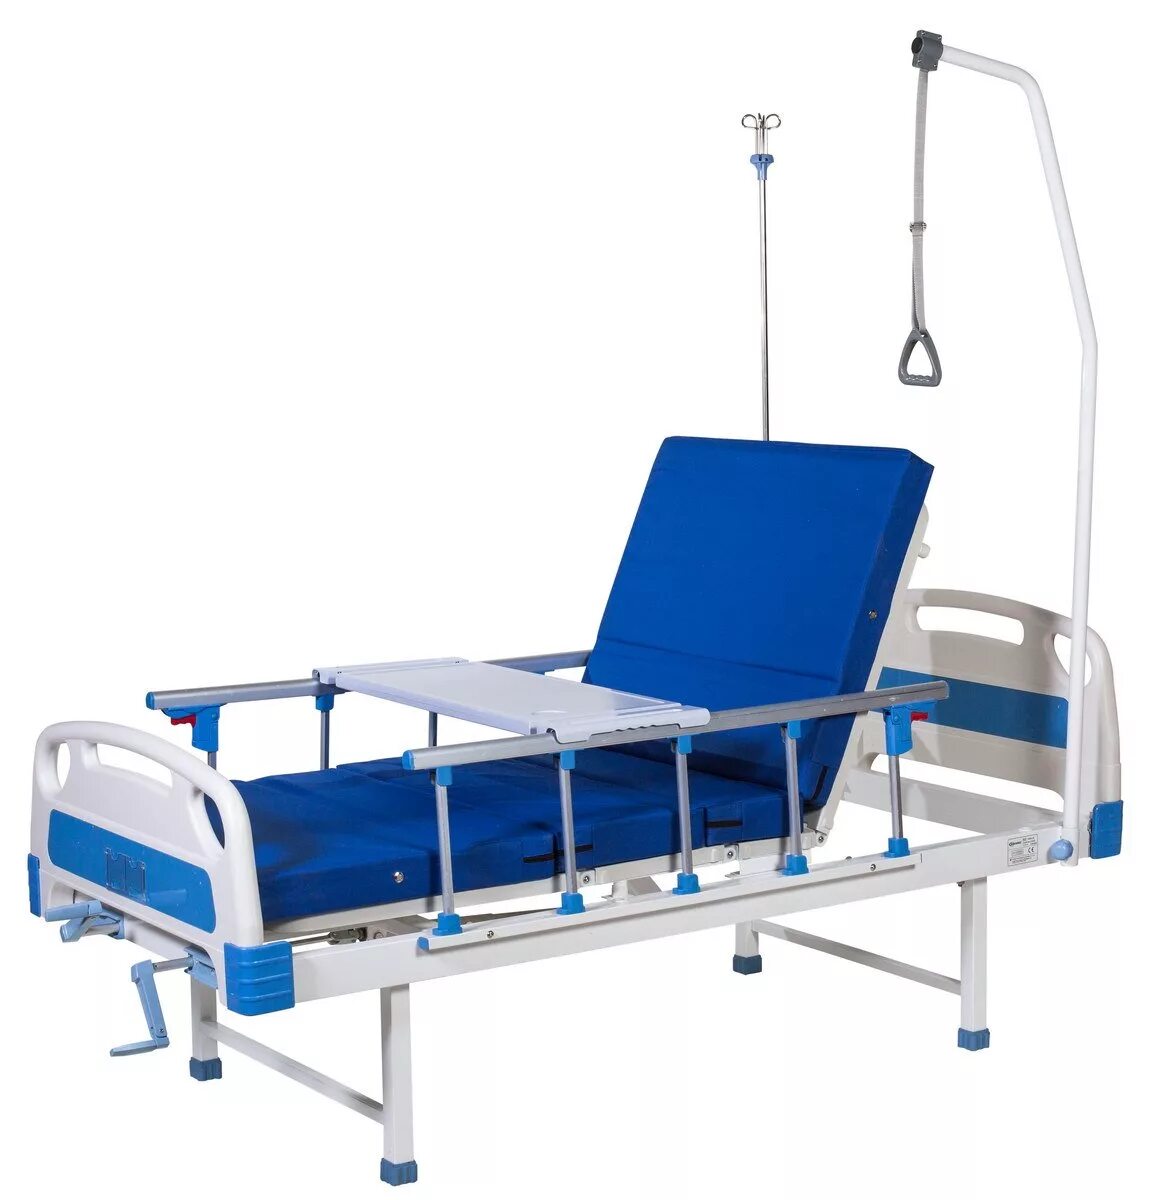 Кровать для больного инсультом. Met DM-370 медицинская кровать механическая четырехсекционная. Кровать медицинская Сигма 3lm. Функциональная кровать Apollo vi-h10. Медицинская кровать км-01.